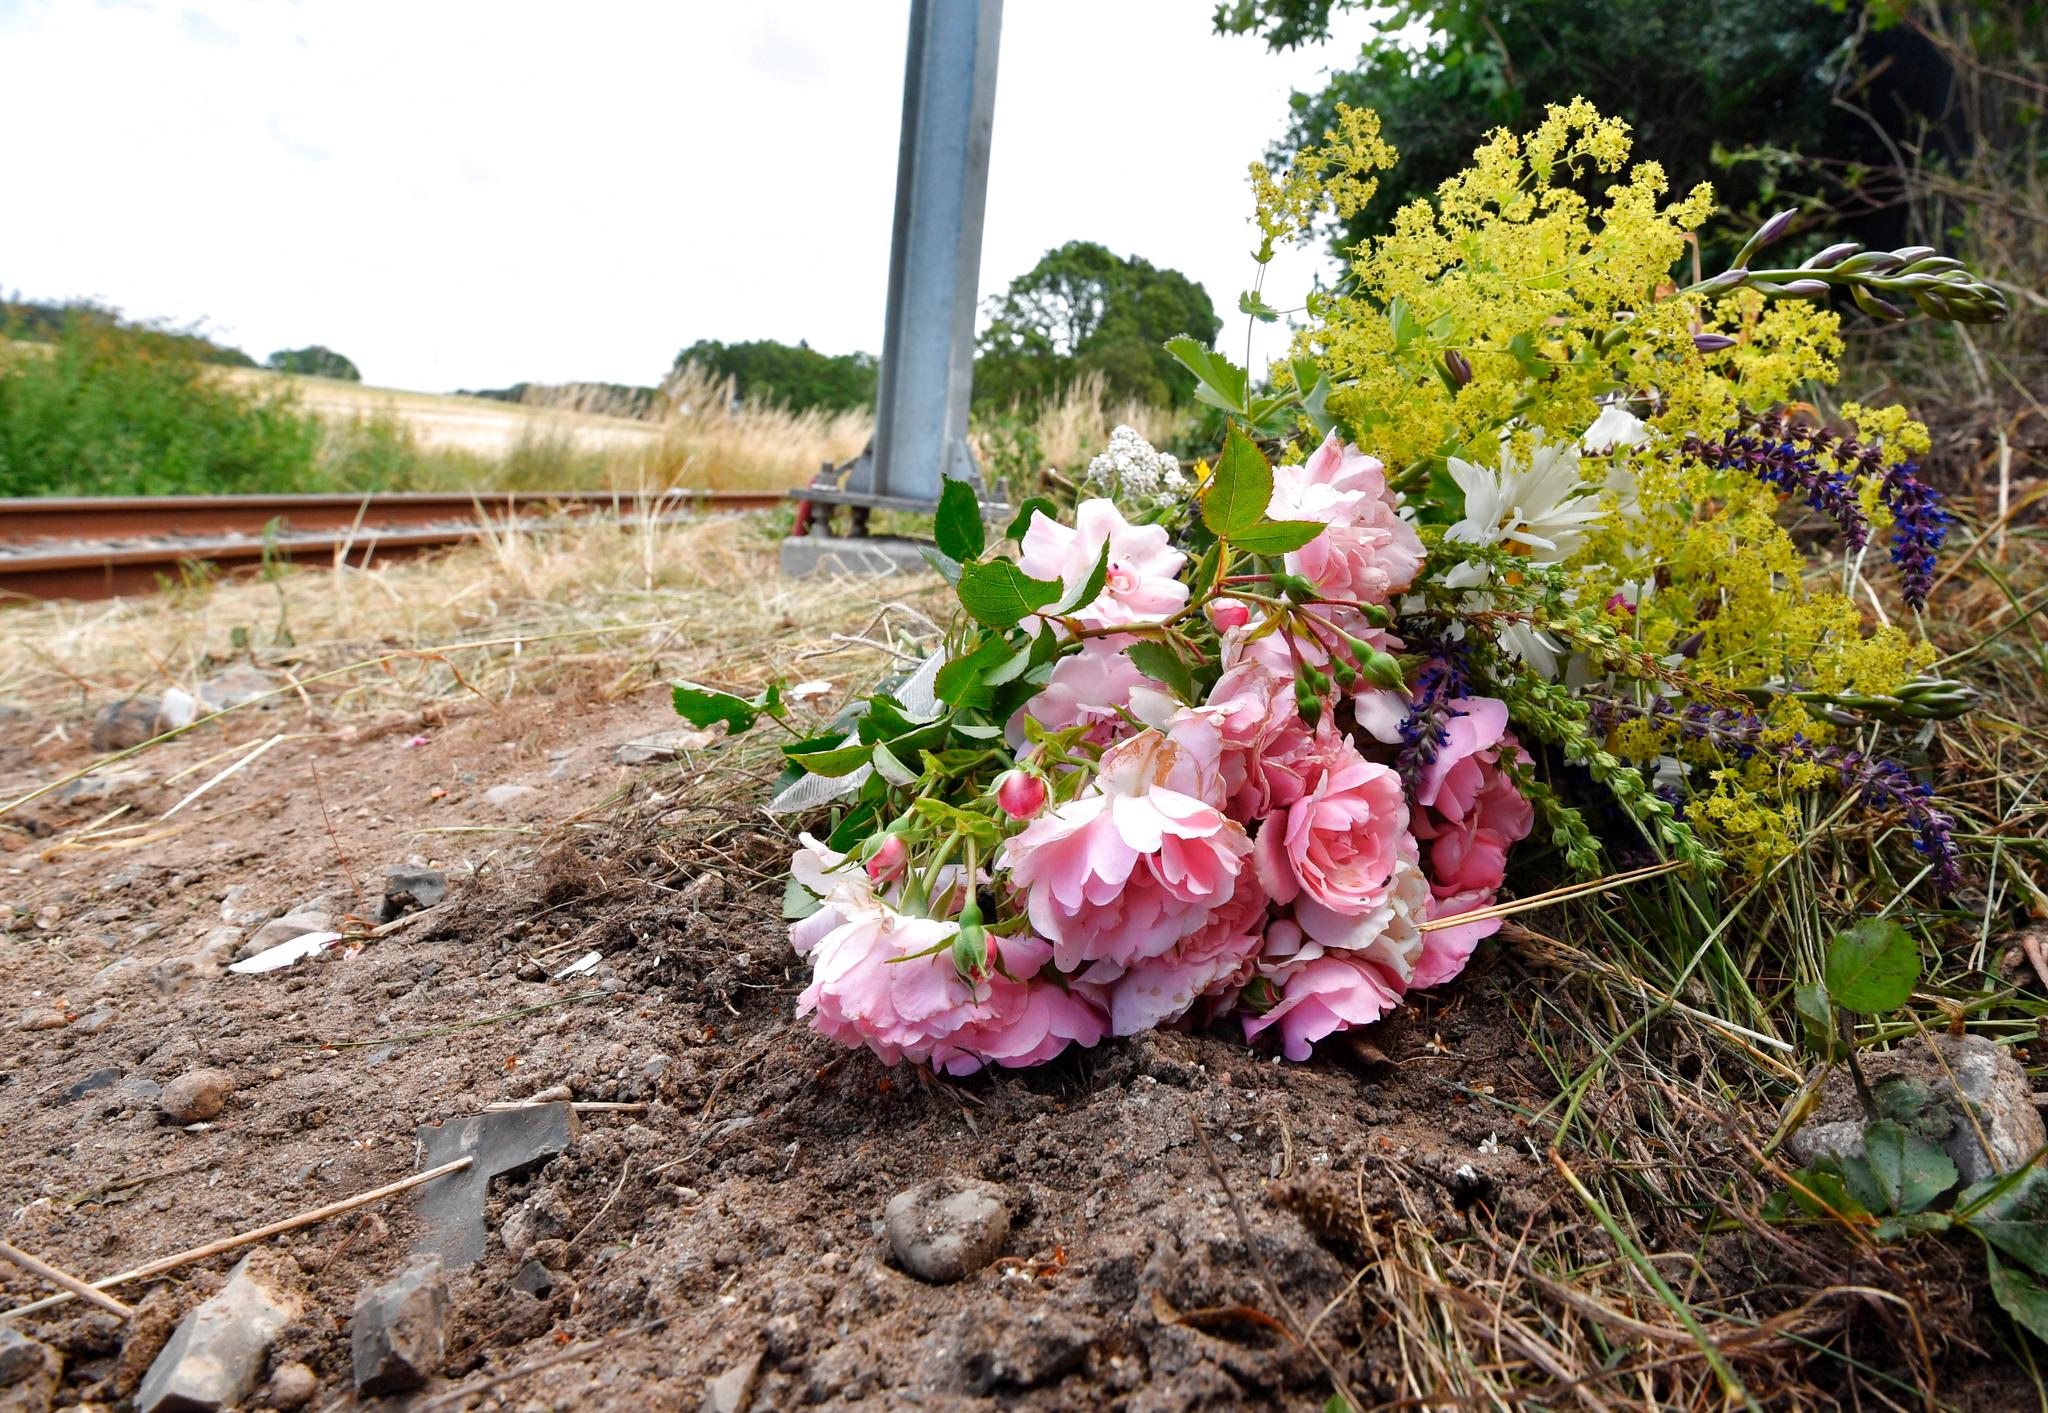 Naboer har lagt ned blomster der en norsk mann og hans sønn mistet livet i en ulykke lørdag mellom en personbil og et letbanetog i Trustrup på Djursland. Foto: Ernst van Norde/ Ritzau NTB scanpix / NTB scanpix